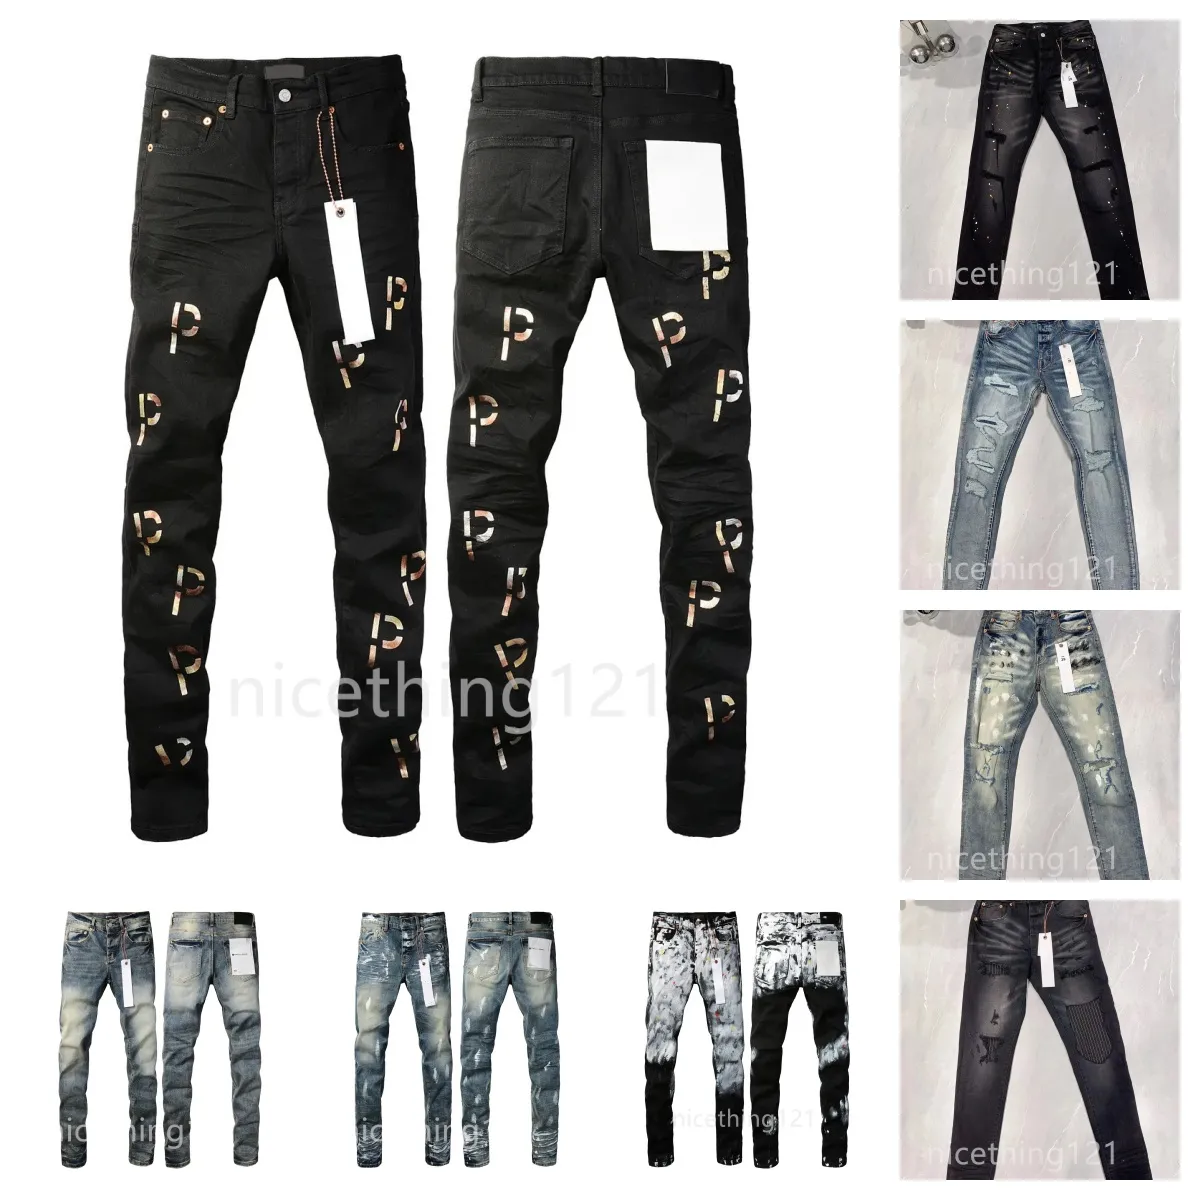 Street Fashion Designer Jeans violets Boutons pour hommes Noir Stretch Élastique Skinny Ripped Jeans Pantalons de marque Jeans pour femmes Slim Fit Moto Pantalon noir blanc